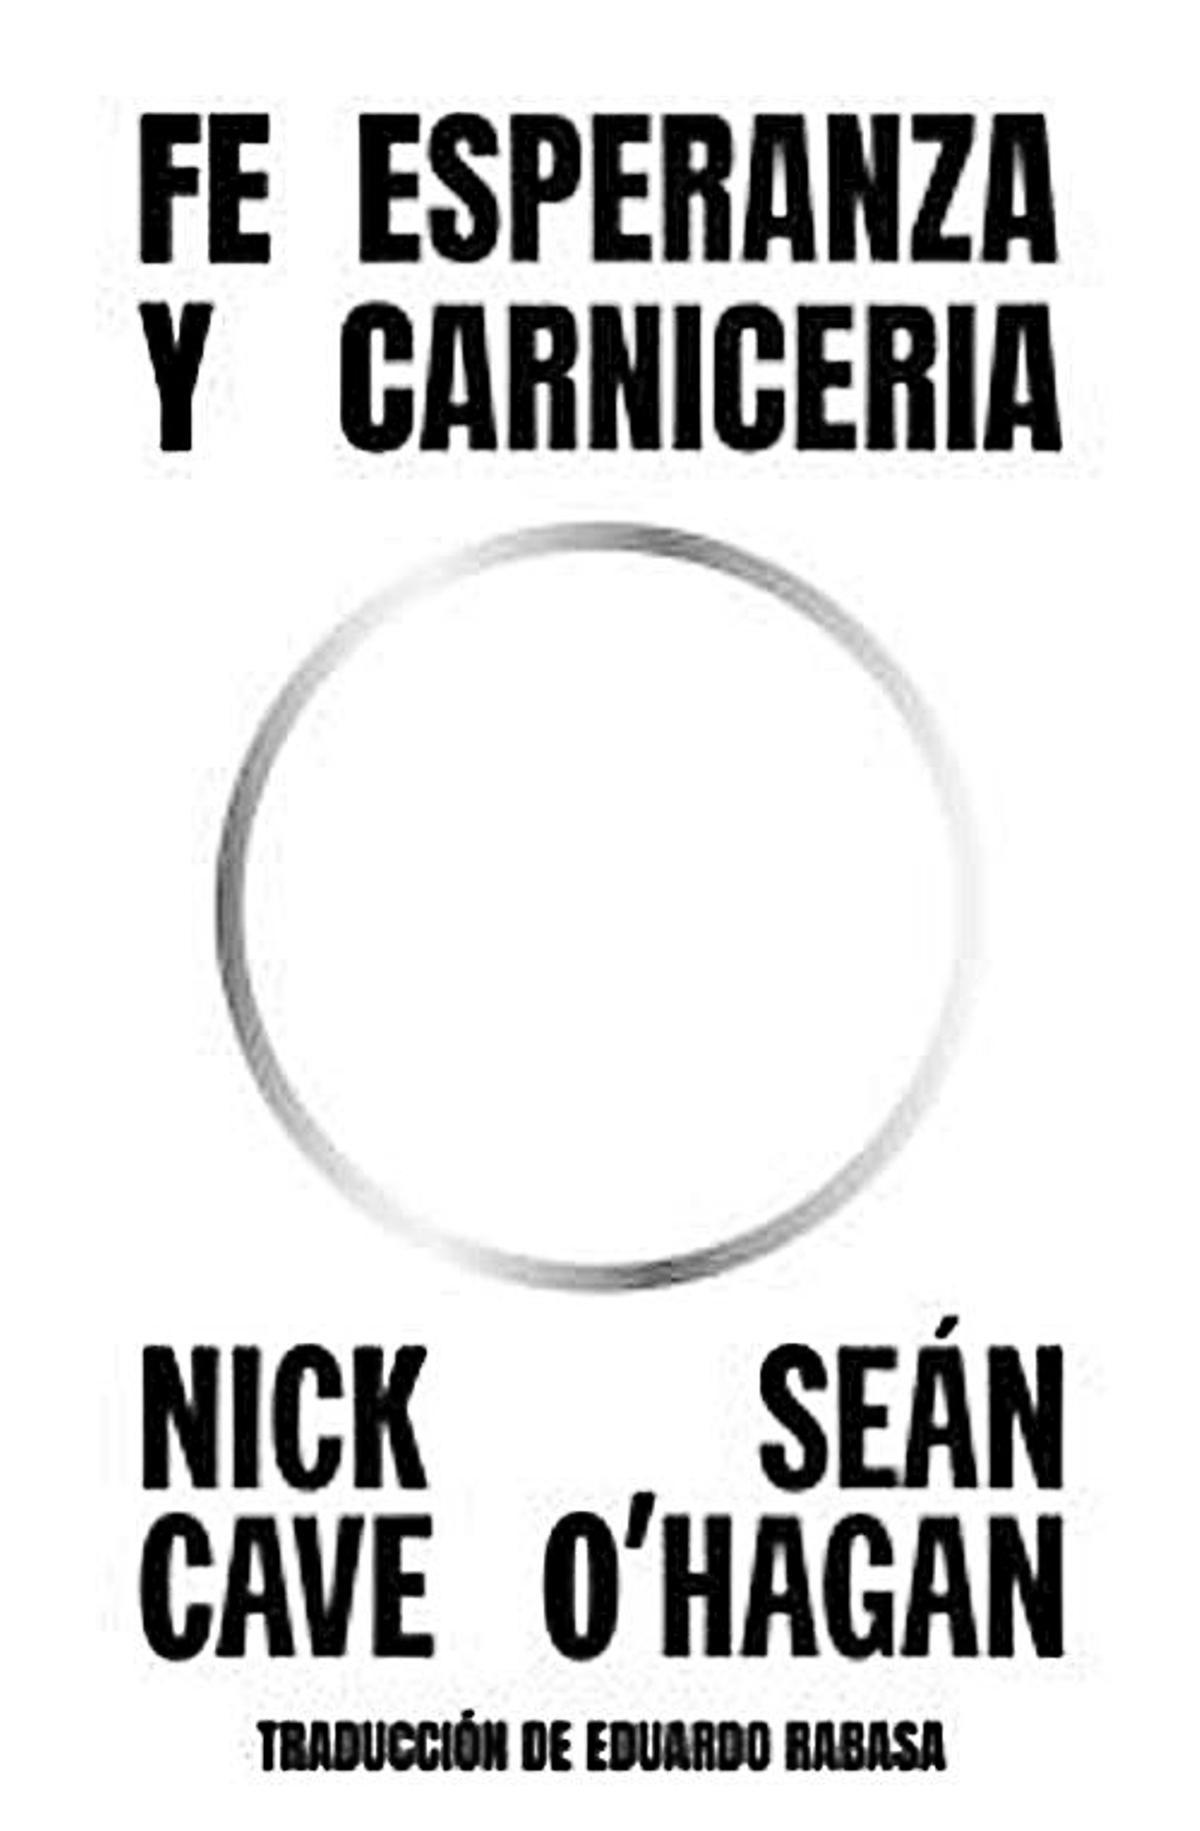 Nick Cave y Sean O’Hagan  Fe, esperanza y carnicería   Editorial Sexto Piso  324 páginas / 23,90 euros